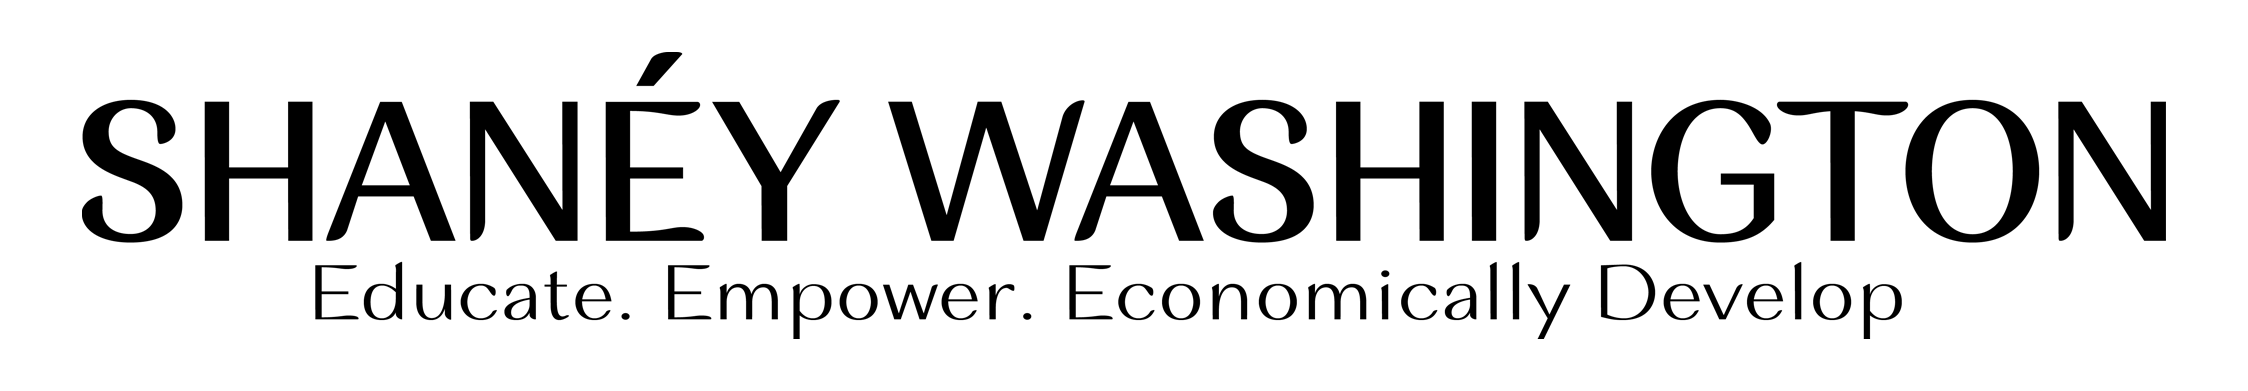 shaney logo